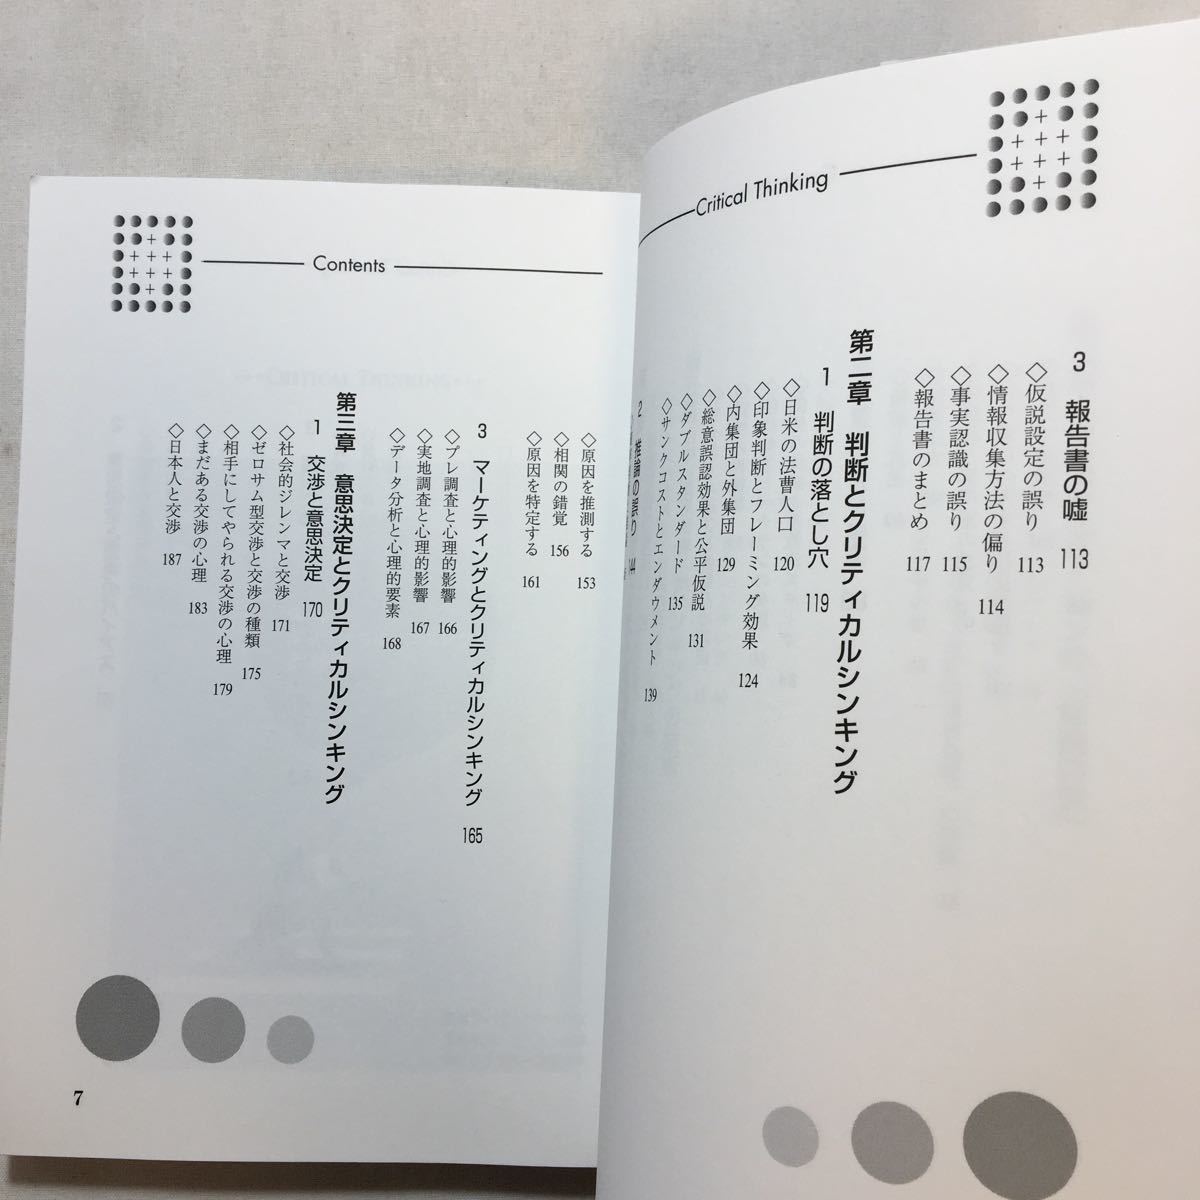 zaa-230♪クリティカルシンキングの技術 　寺田 欣司 (著)　単行本 2001/10/1